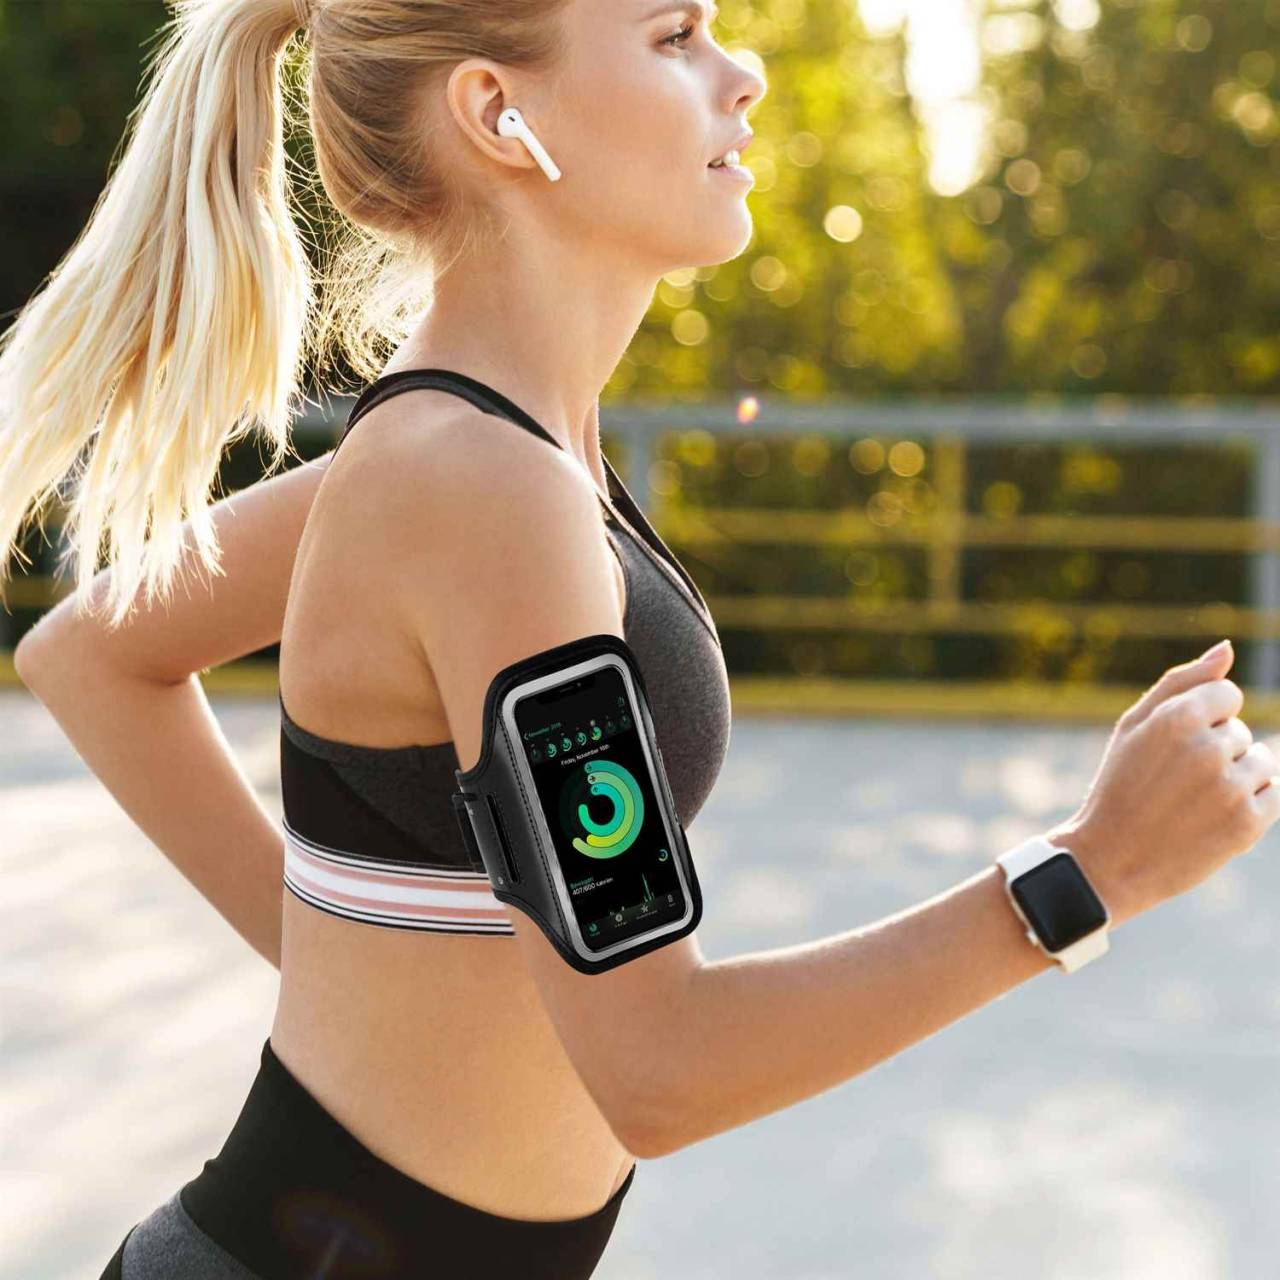 ONEFLOW Workout Case für LG Google Nexus 4 – Handy Sport Armband zum Joggen und Fitness Training